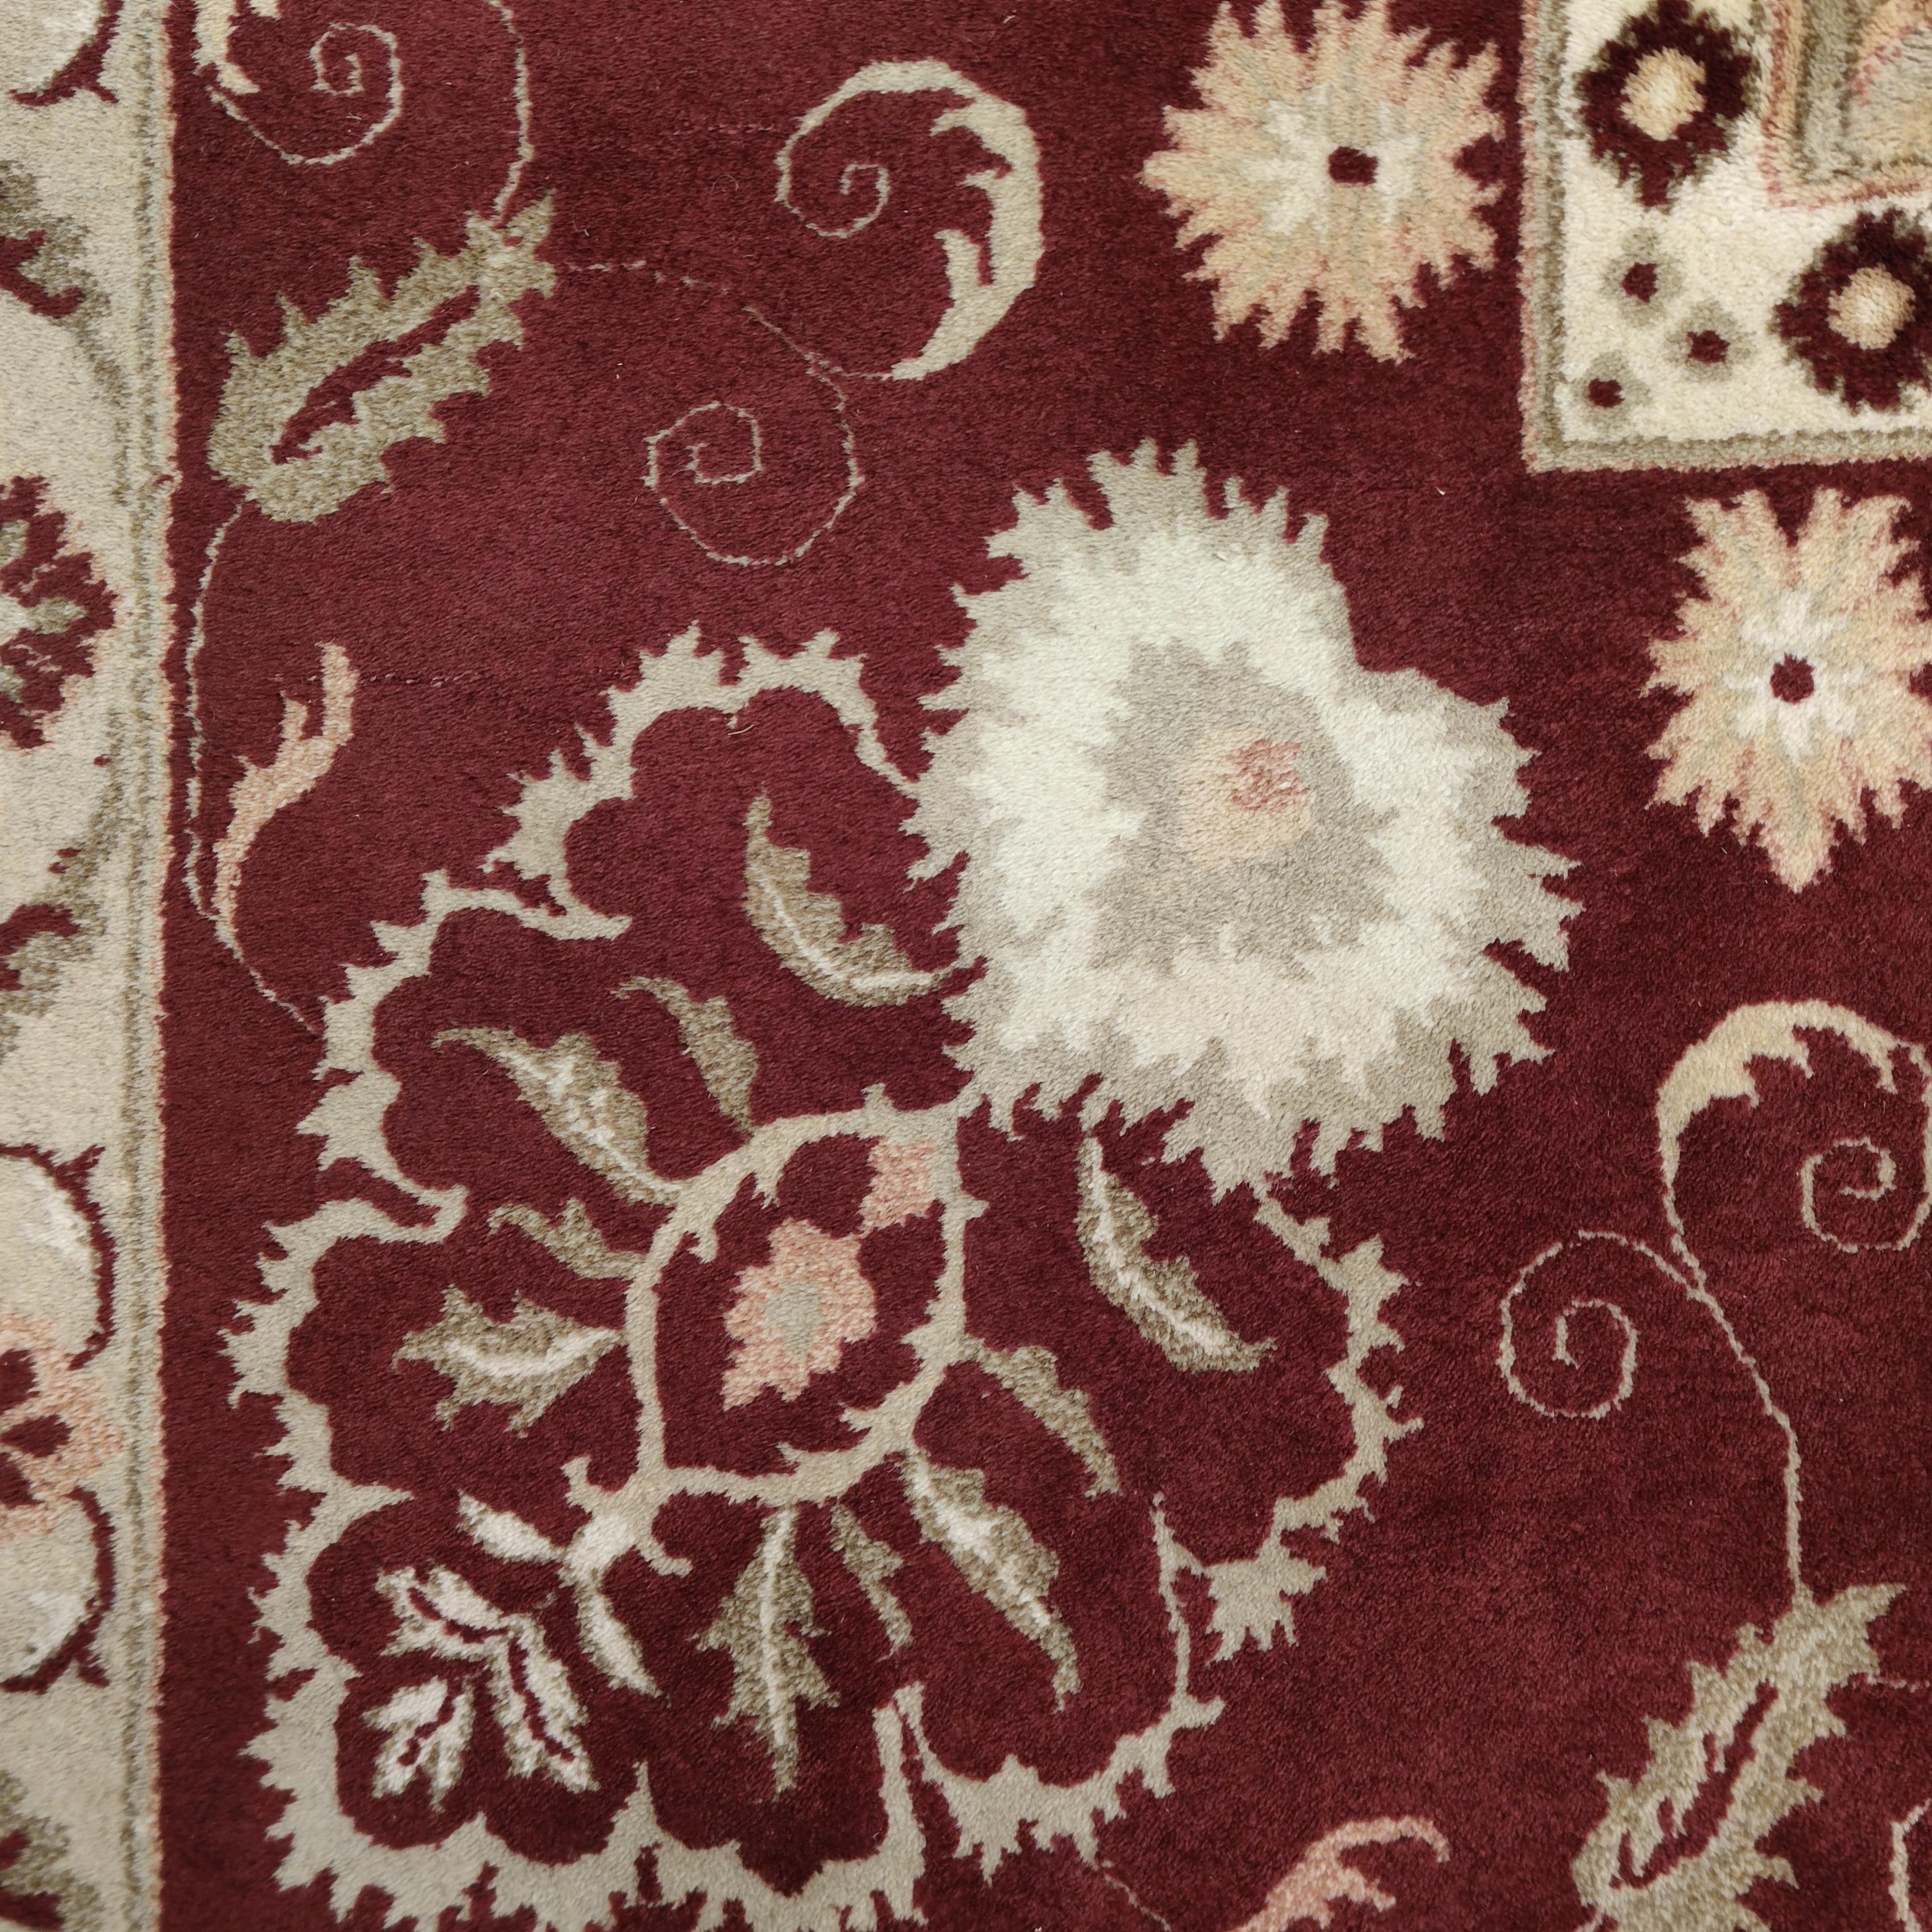 Agra-Teppiche zählen seit jeher zu den raffiniertesten Dekorationsteppichen. Sie wurden vom britischen Adel während der Kolonialzeit in Auftrag gegeben, um ihre Schlösser und Paläste zu schmücken. Dieses fein geknüpfte Exemplar zeichnet sich durch